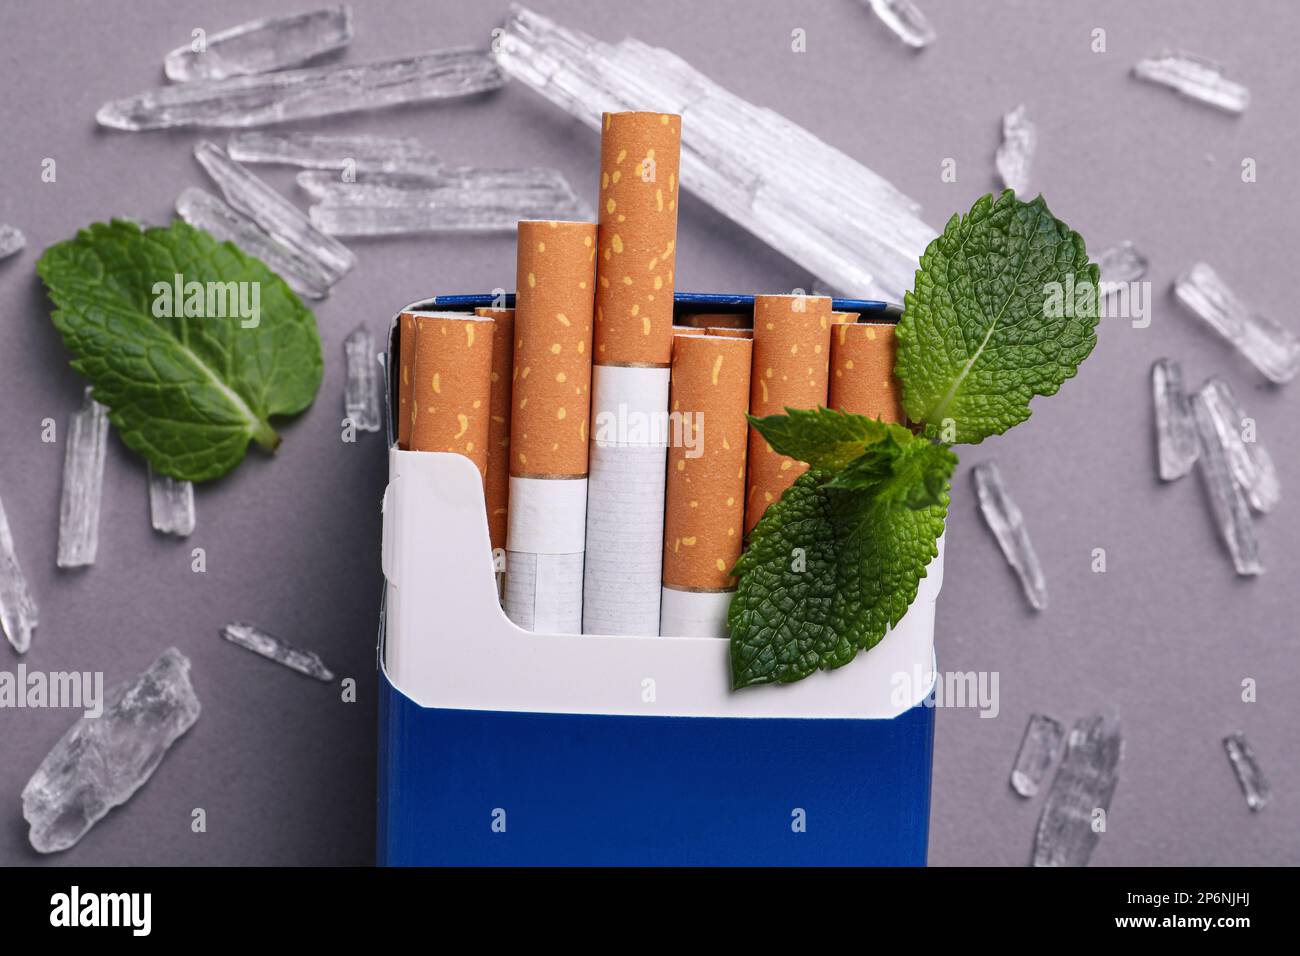 Paquet de cigarettes, de cristaux de menthol et de feuilles de menthe sur fond gris, plat Banque D'Images